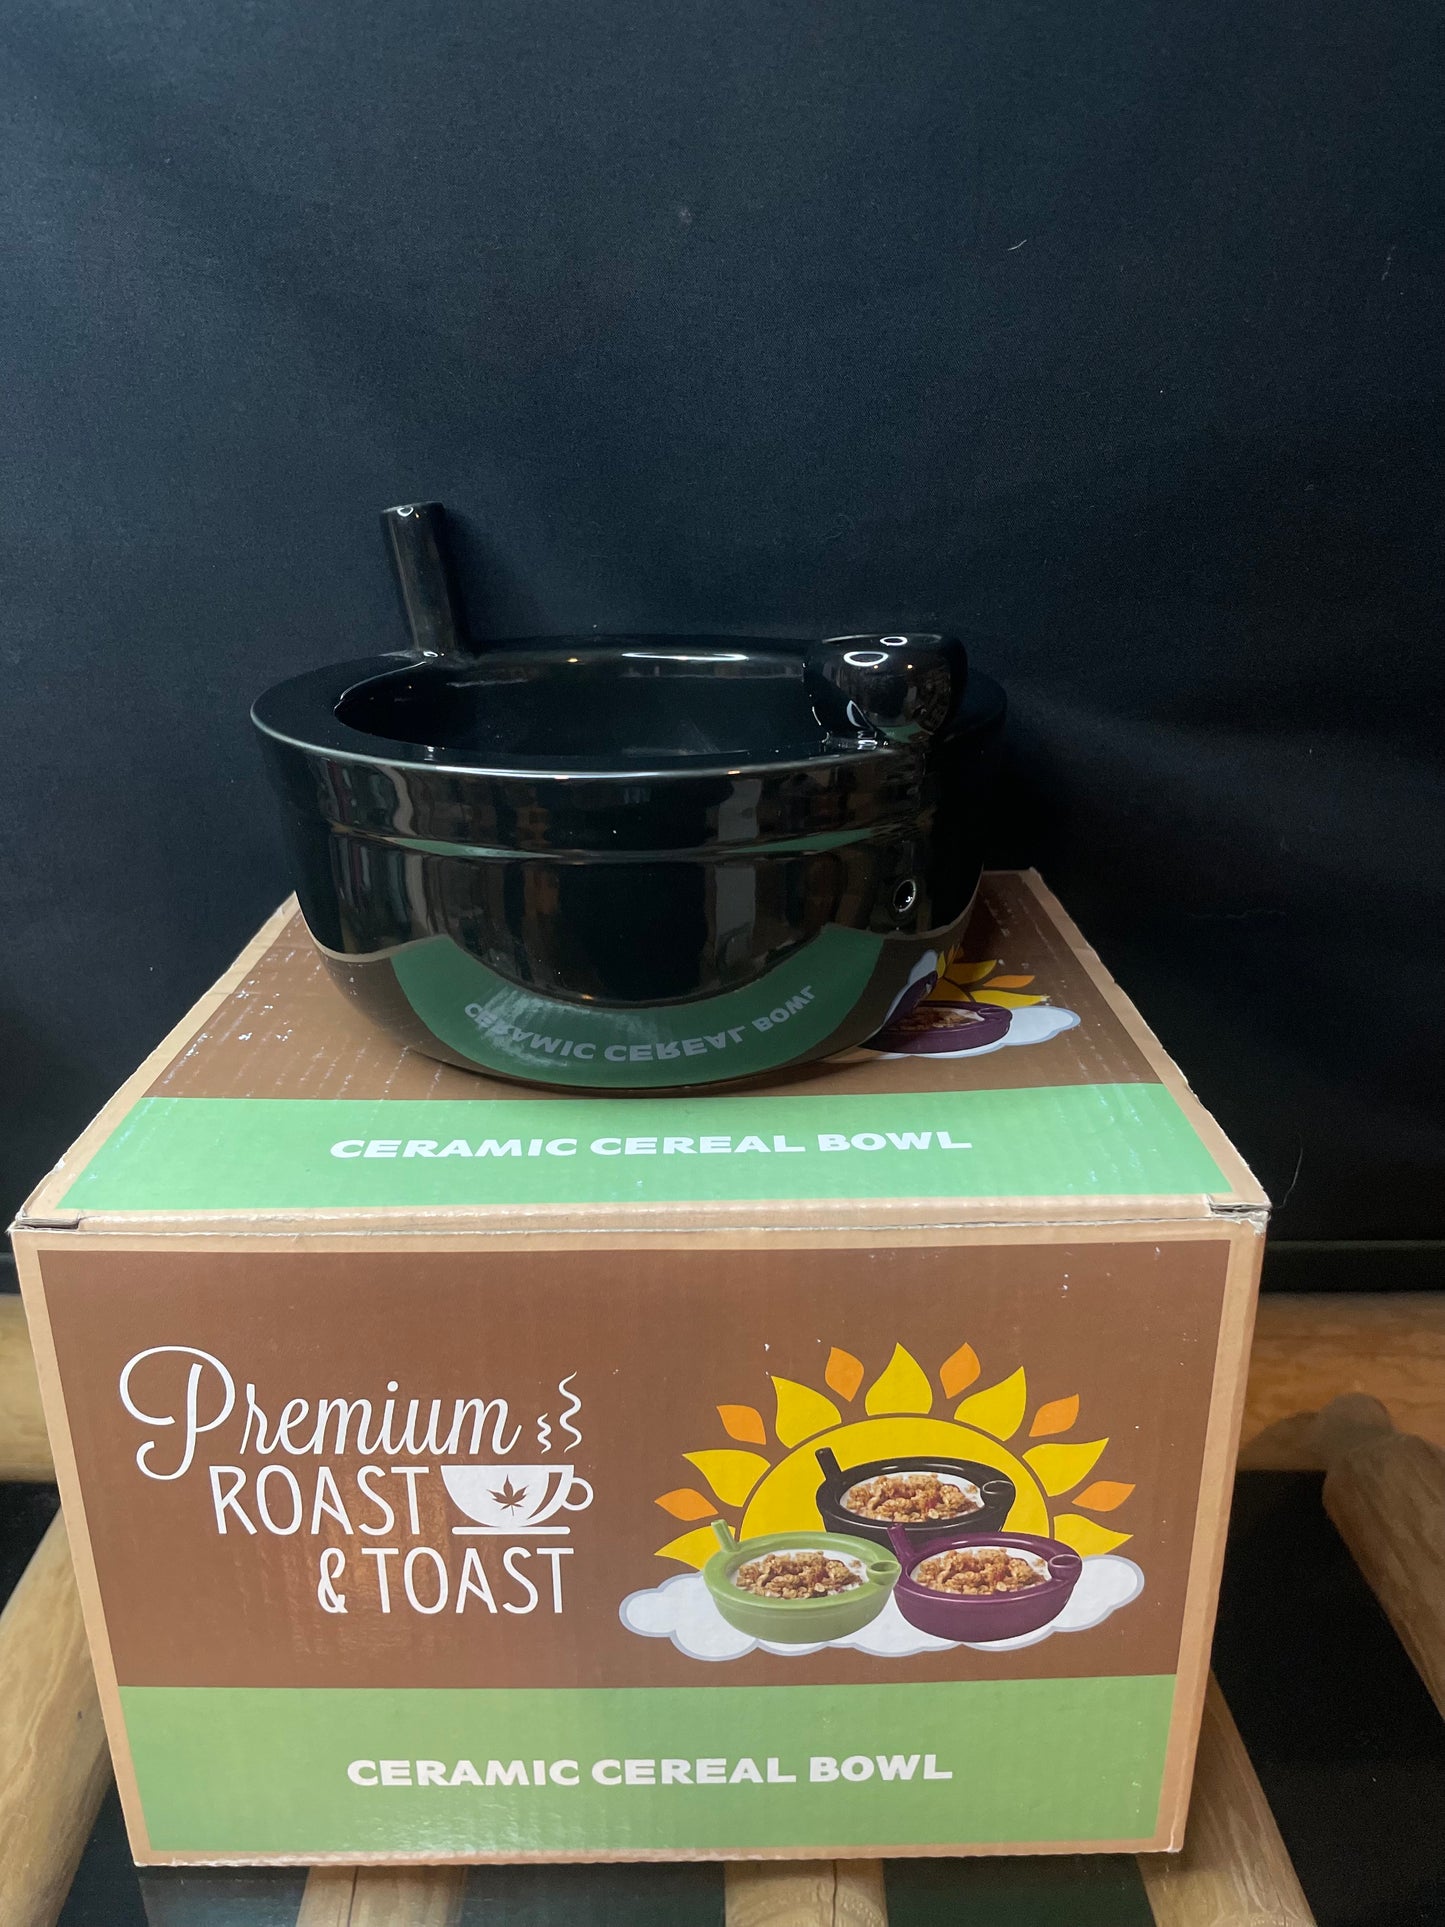 Premiums Roast & Toast Cereal Bowl